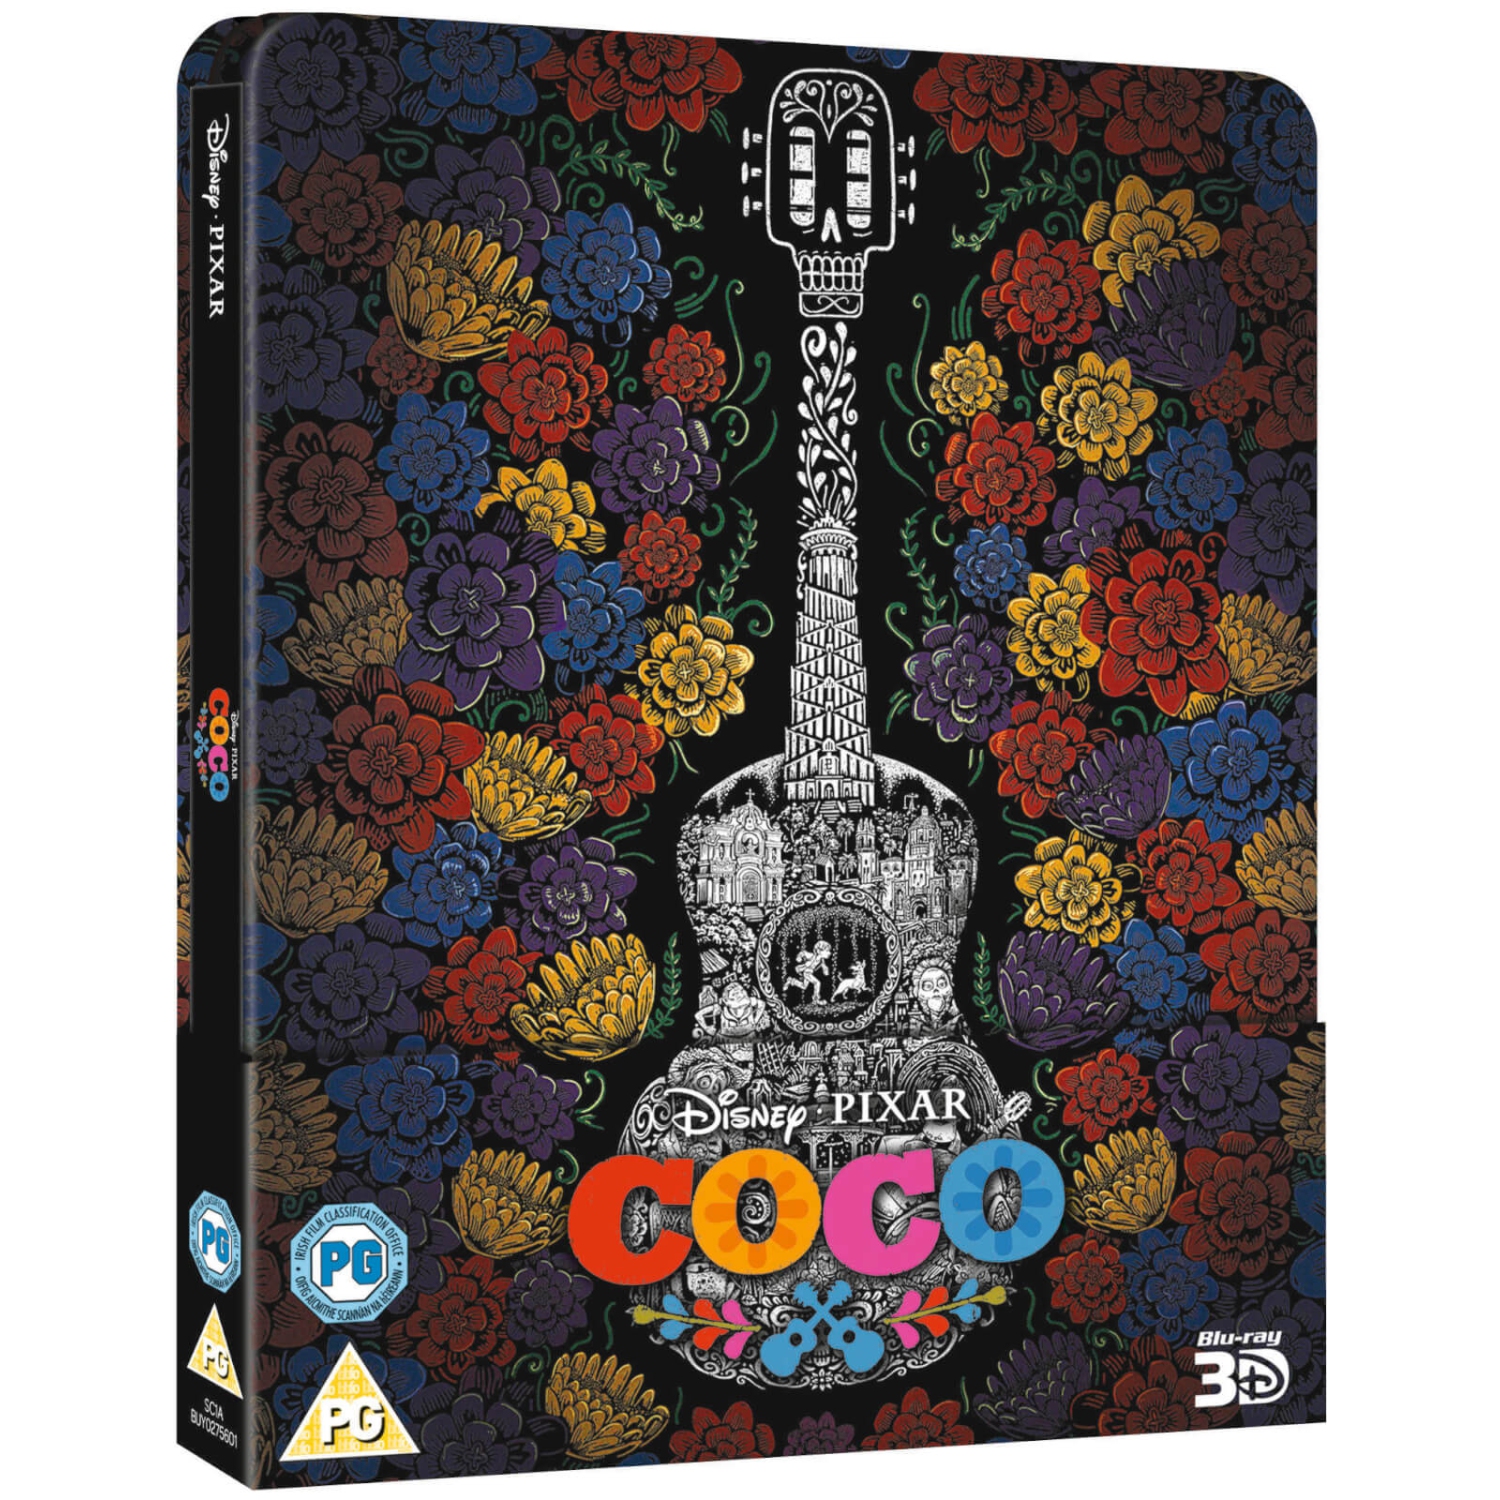 Coco Steelbook (Blu-ray 3D)